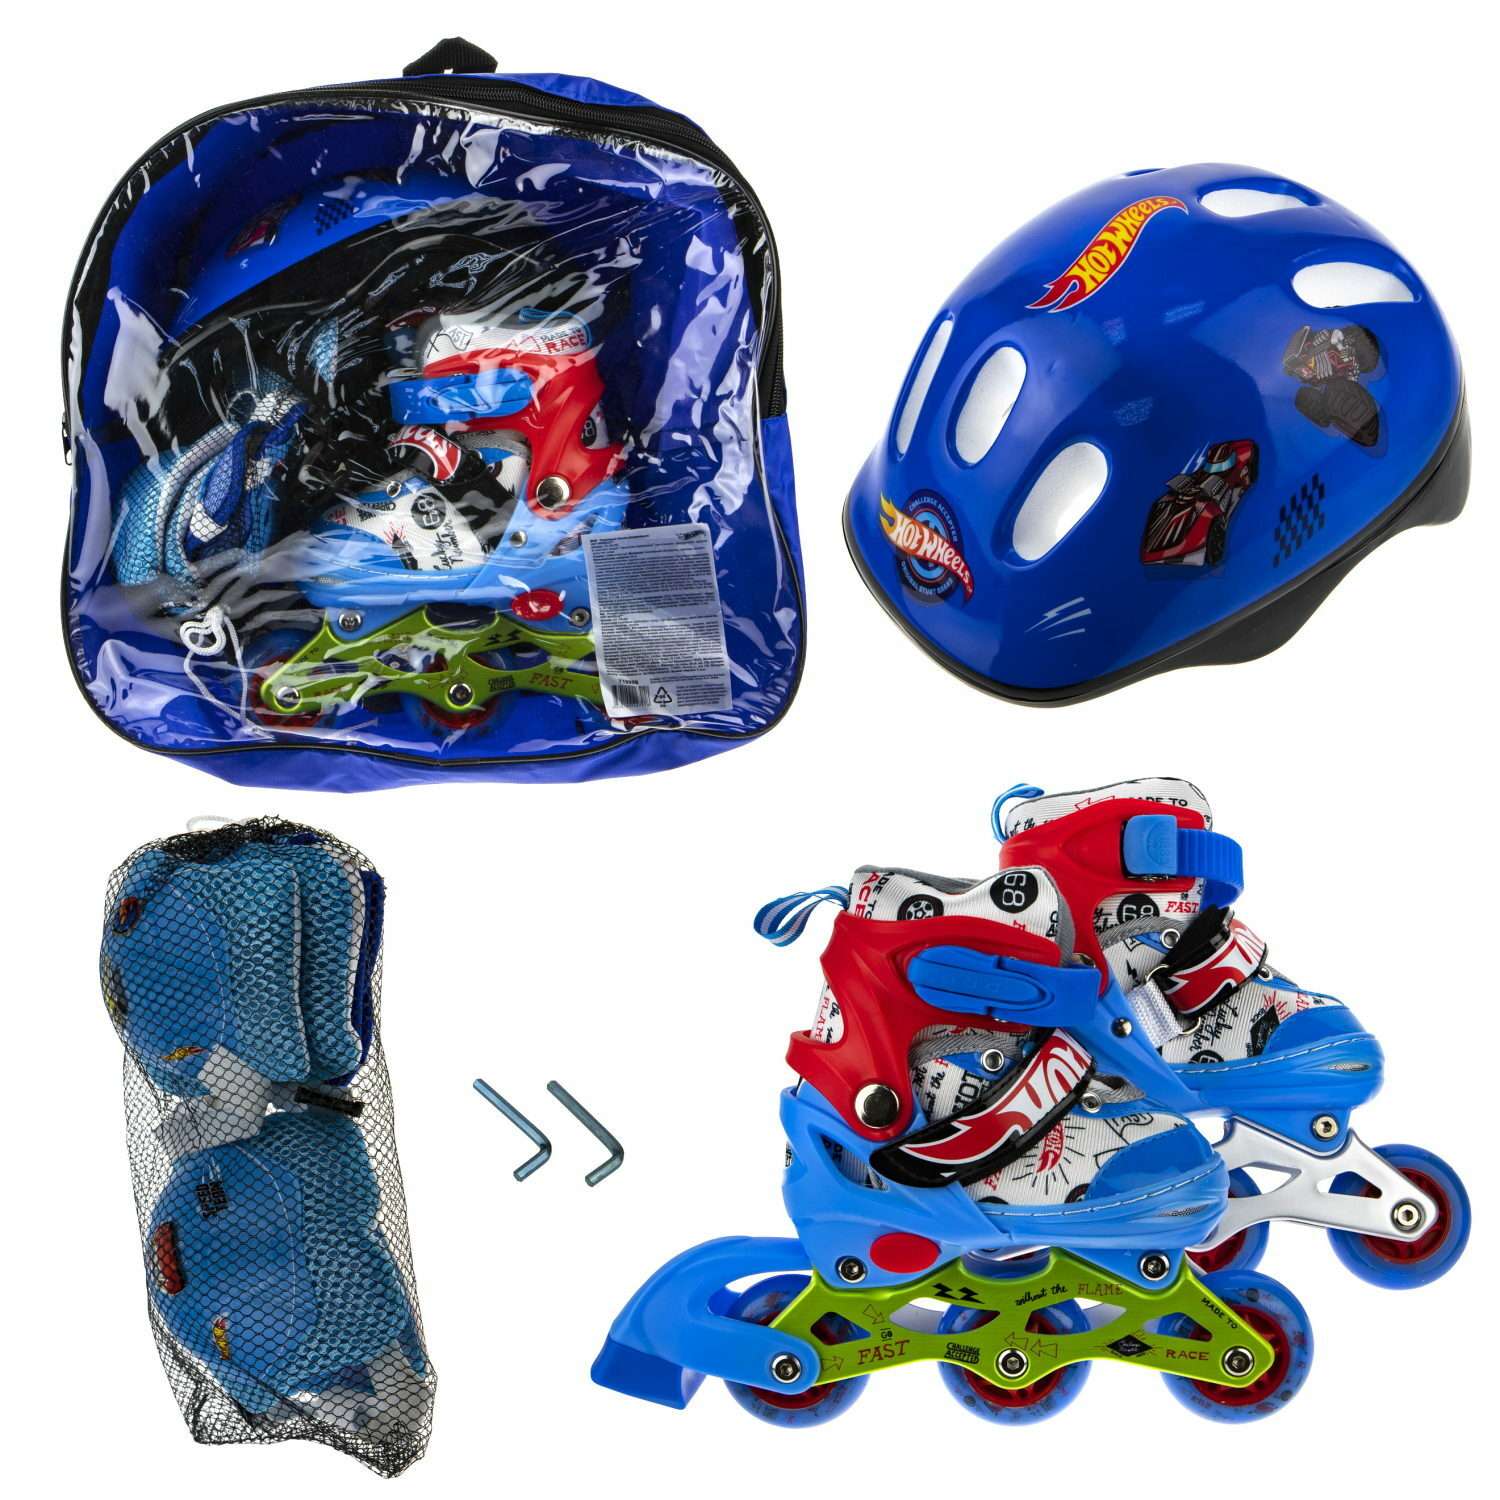 Коньки роликовые Hot Wheels со светом в комплекте с защитой и шлемом XS 26-29 - фото 4